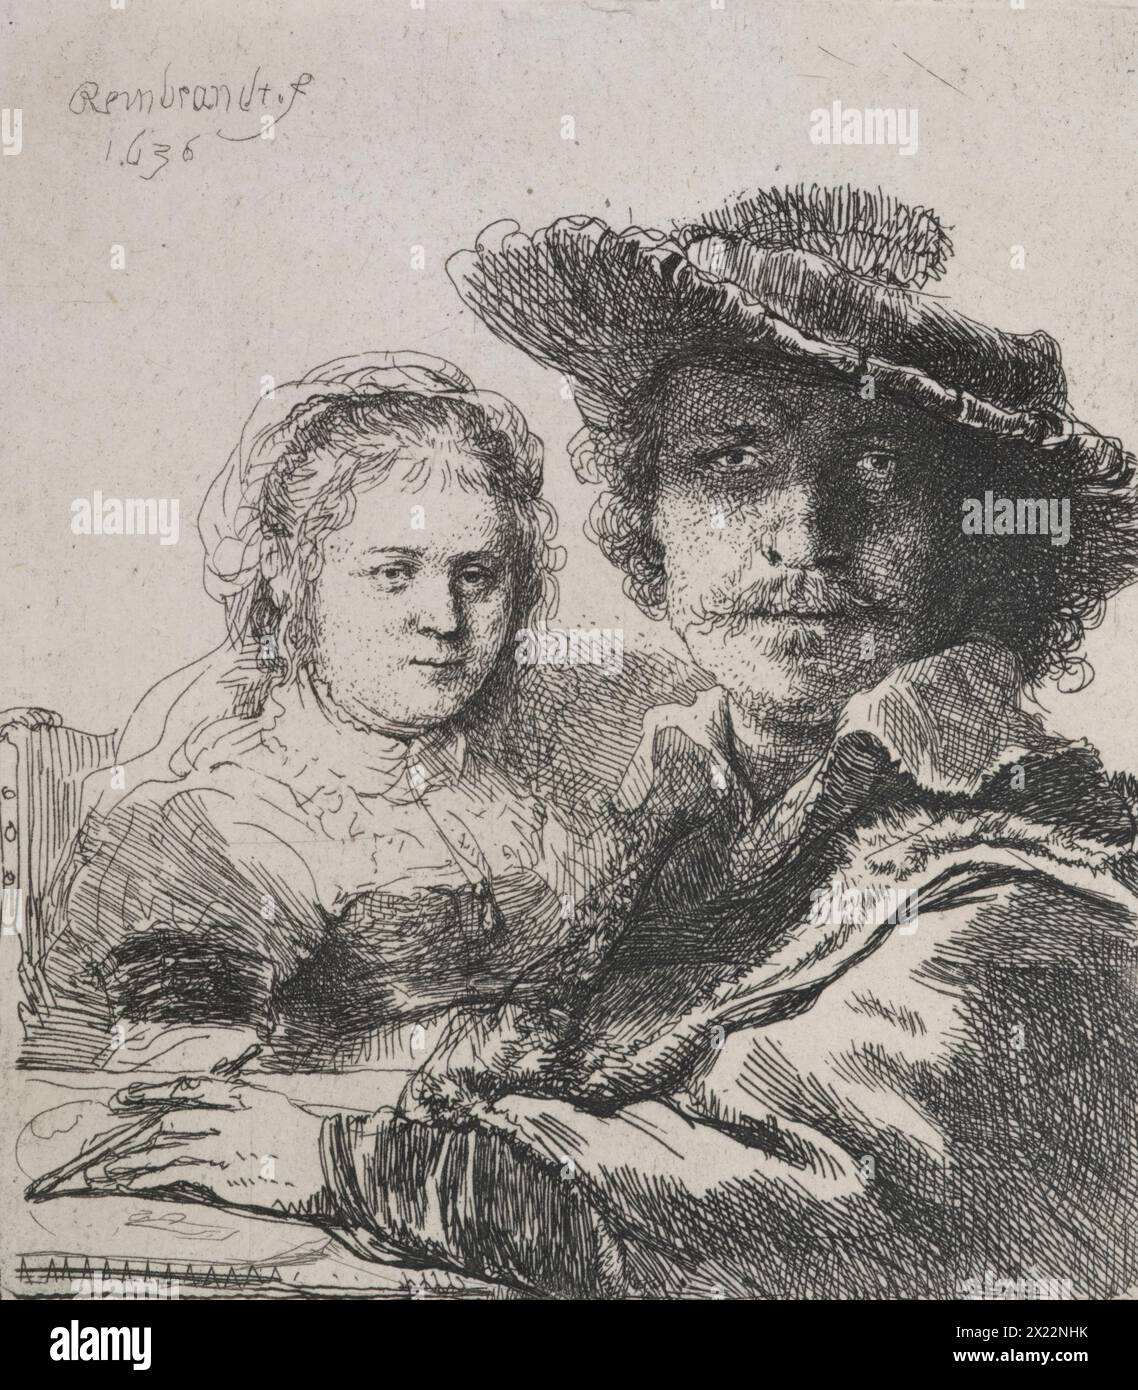 Selbstporträt mit Saskia, 1636. Der Künstler und seine Frau werden in historischer Kleidung gezeigt. Rembrandt trägt eine fantasievolle, gefederte Baskenmütze im Stil des 16. Jahrhunderts, die in einem schrägen Winkel geneigt ist, und einen Pelzmantel, während Saskia einen altmodischen Schleier trägt. Diese kleine Gravur dient nicht nur als eines von vielen Selbstporträts, sondern kann auch als Beispiel für ein Eheporträt angesehen werden. Die junge Frau, die mit Rembrandt am Tisch sitzt, ist seine Frau Saskia van Uylenburgh, damals Anfang 20. Sie hatten zwei Jahre vor dieser Ätzung geheiratet und blieben acht Jahre lang zusammen bis Saski Stockfoto